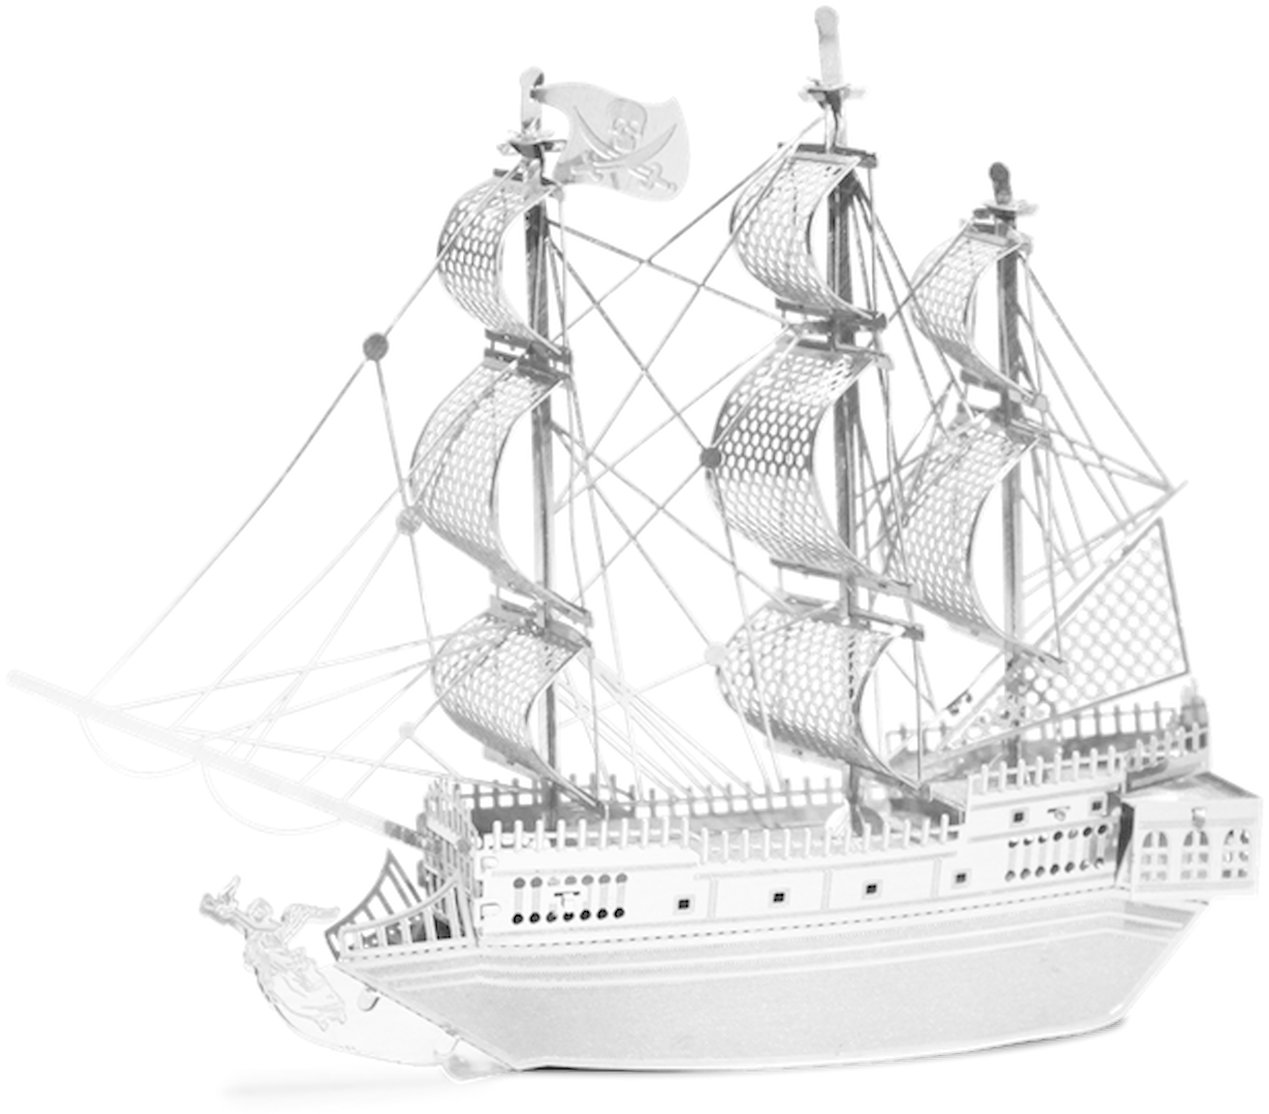 Sailing Ship Model Display